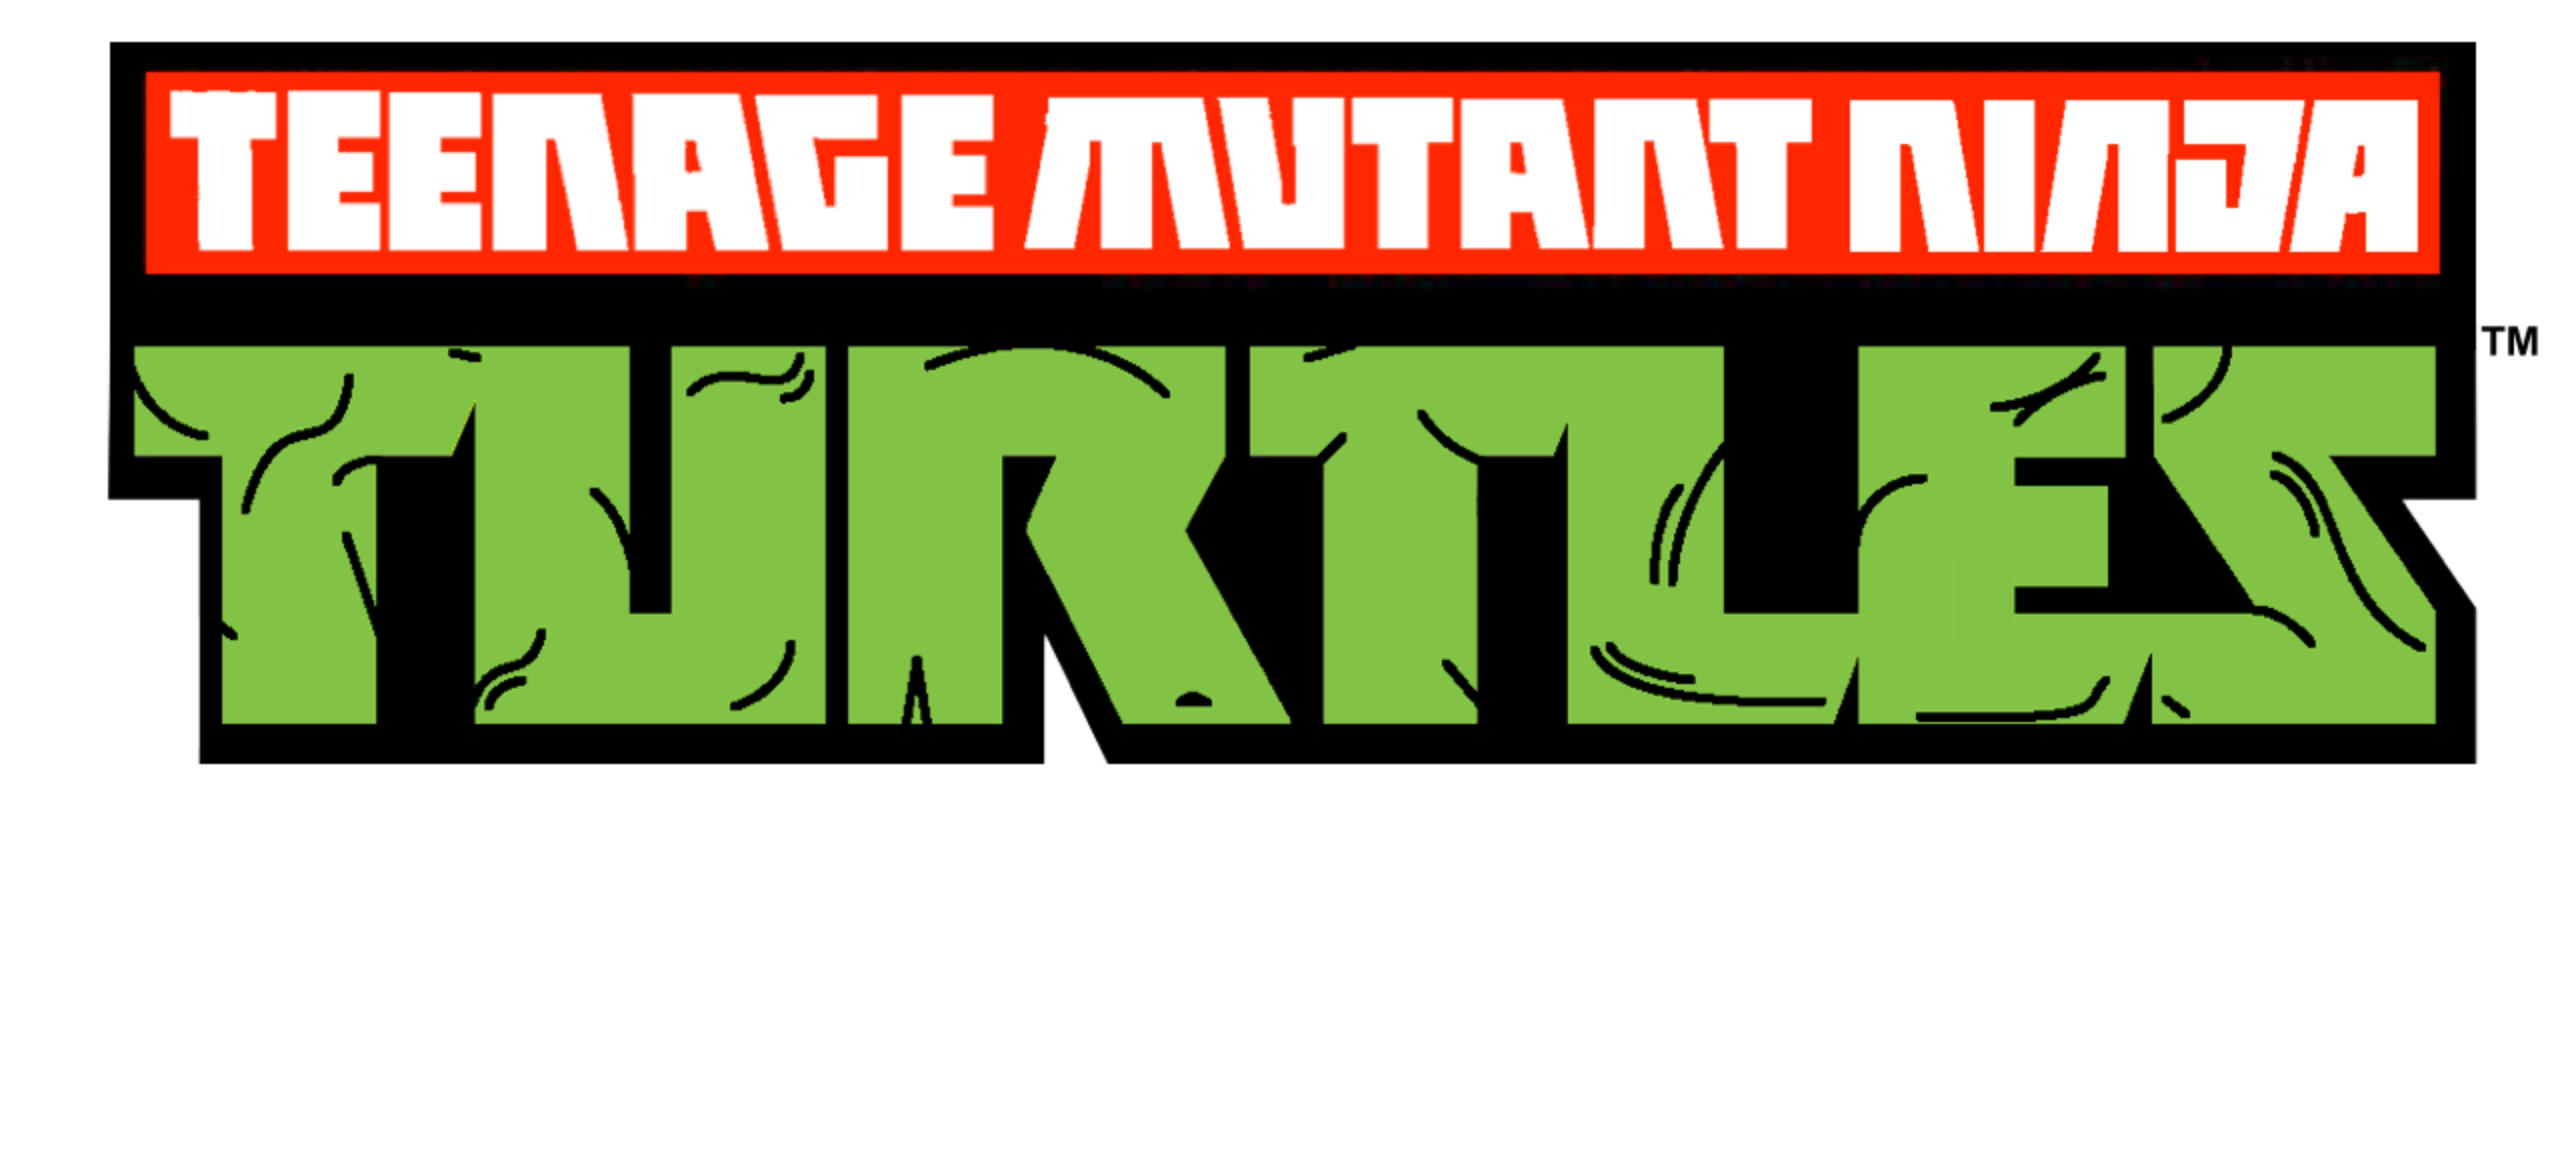 Teenage Mutant Ninja Turtles 2012 Complete 